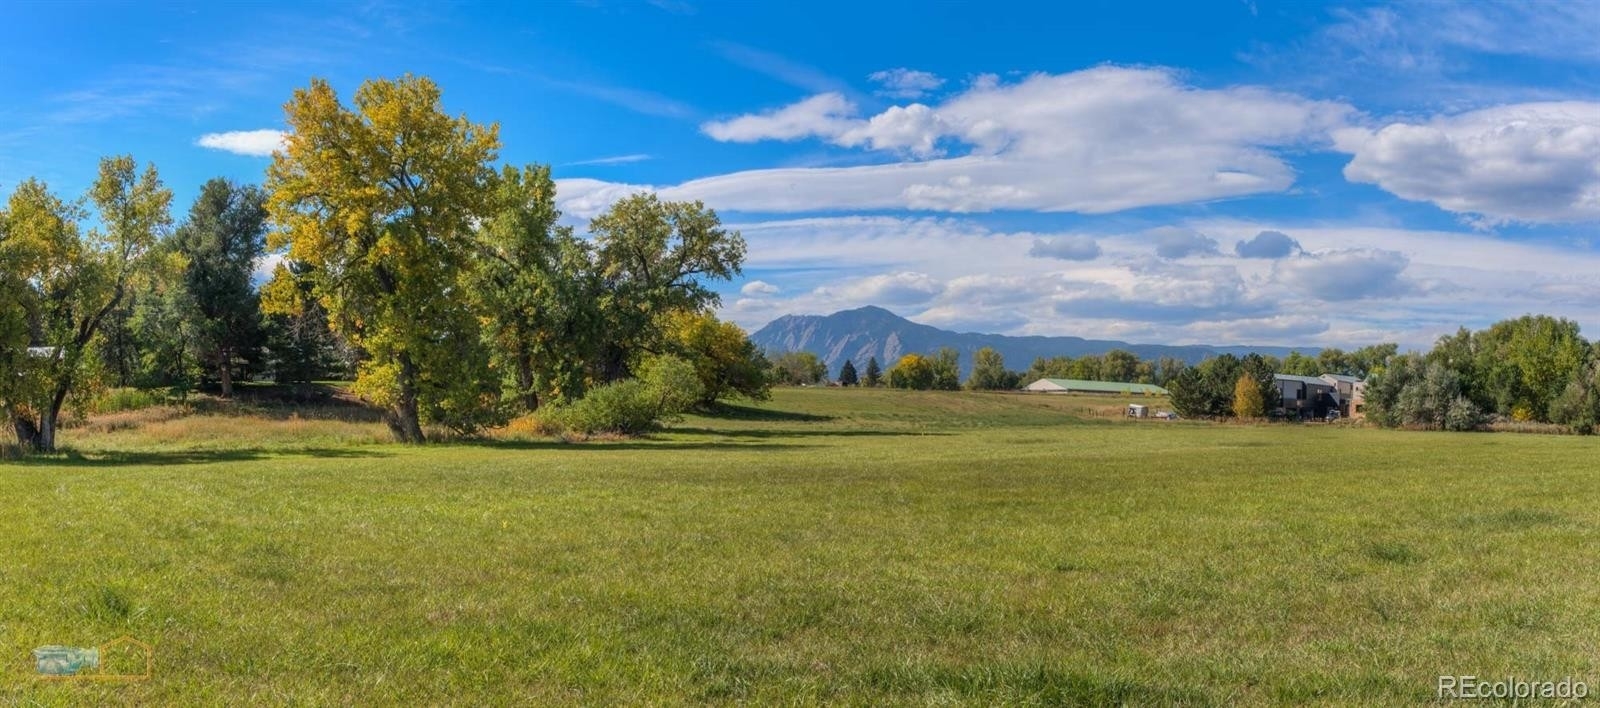 Land for Sale at Boulder, CO 80301